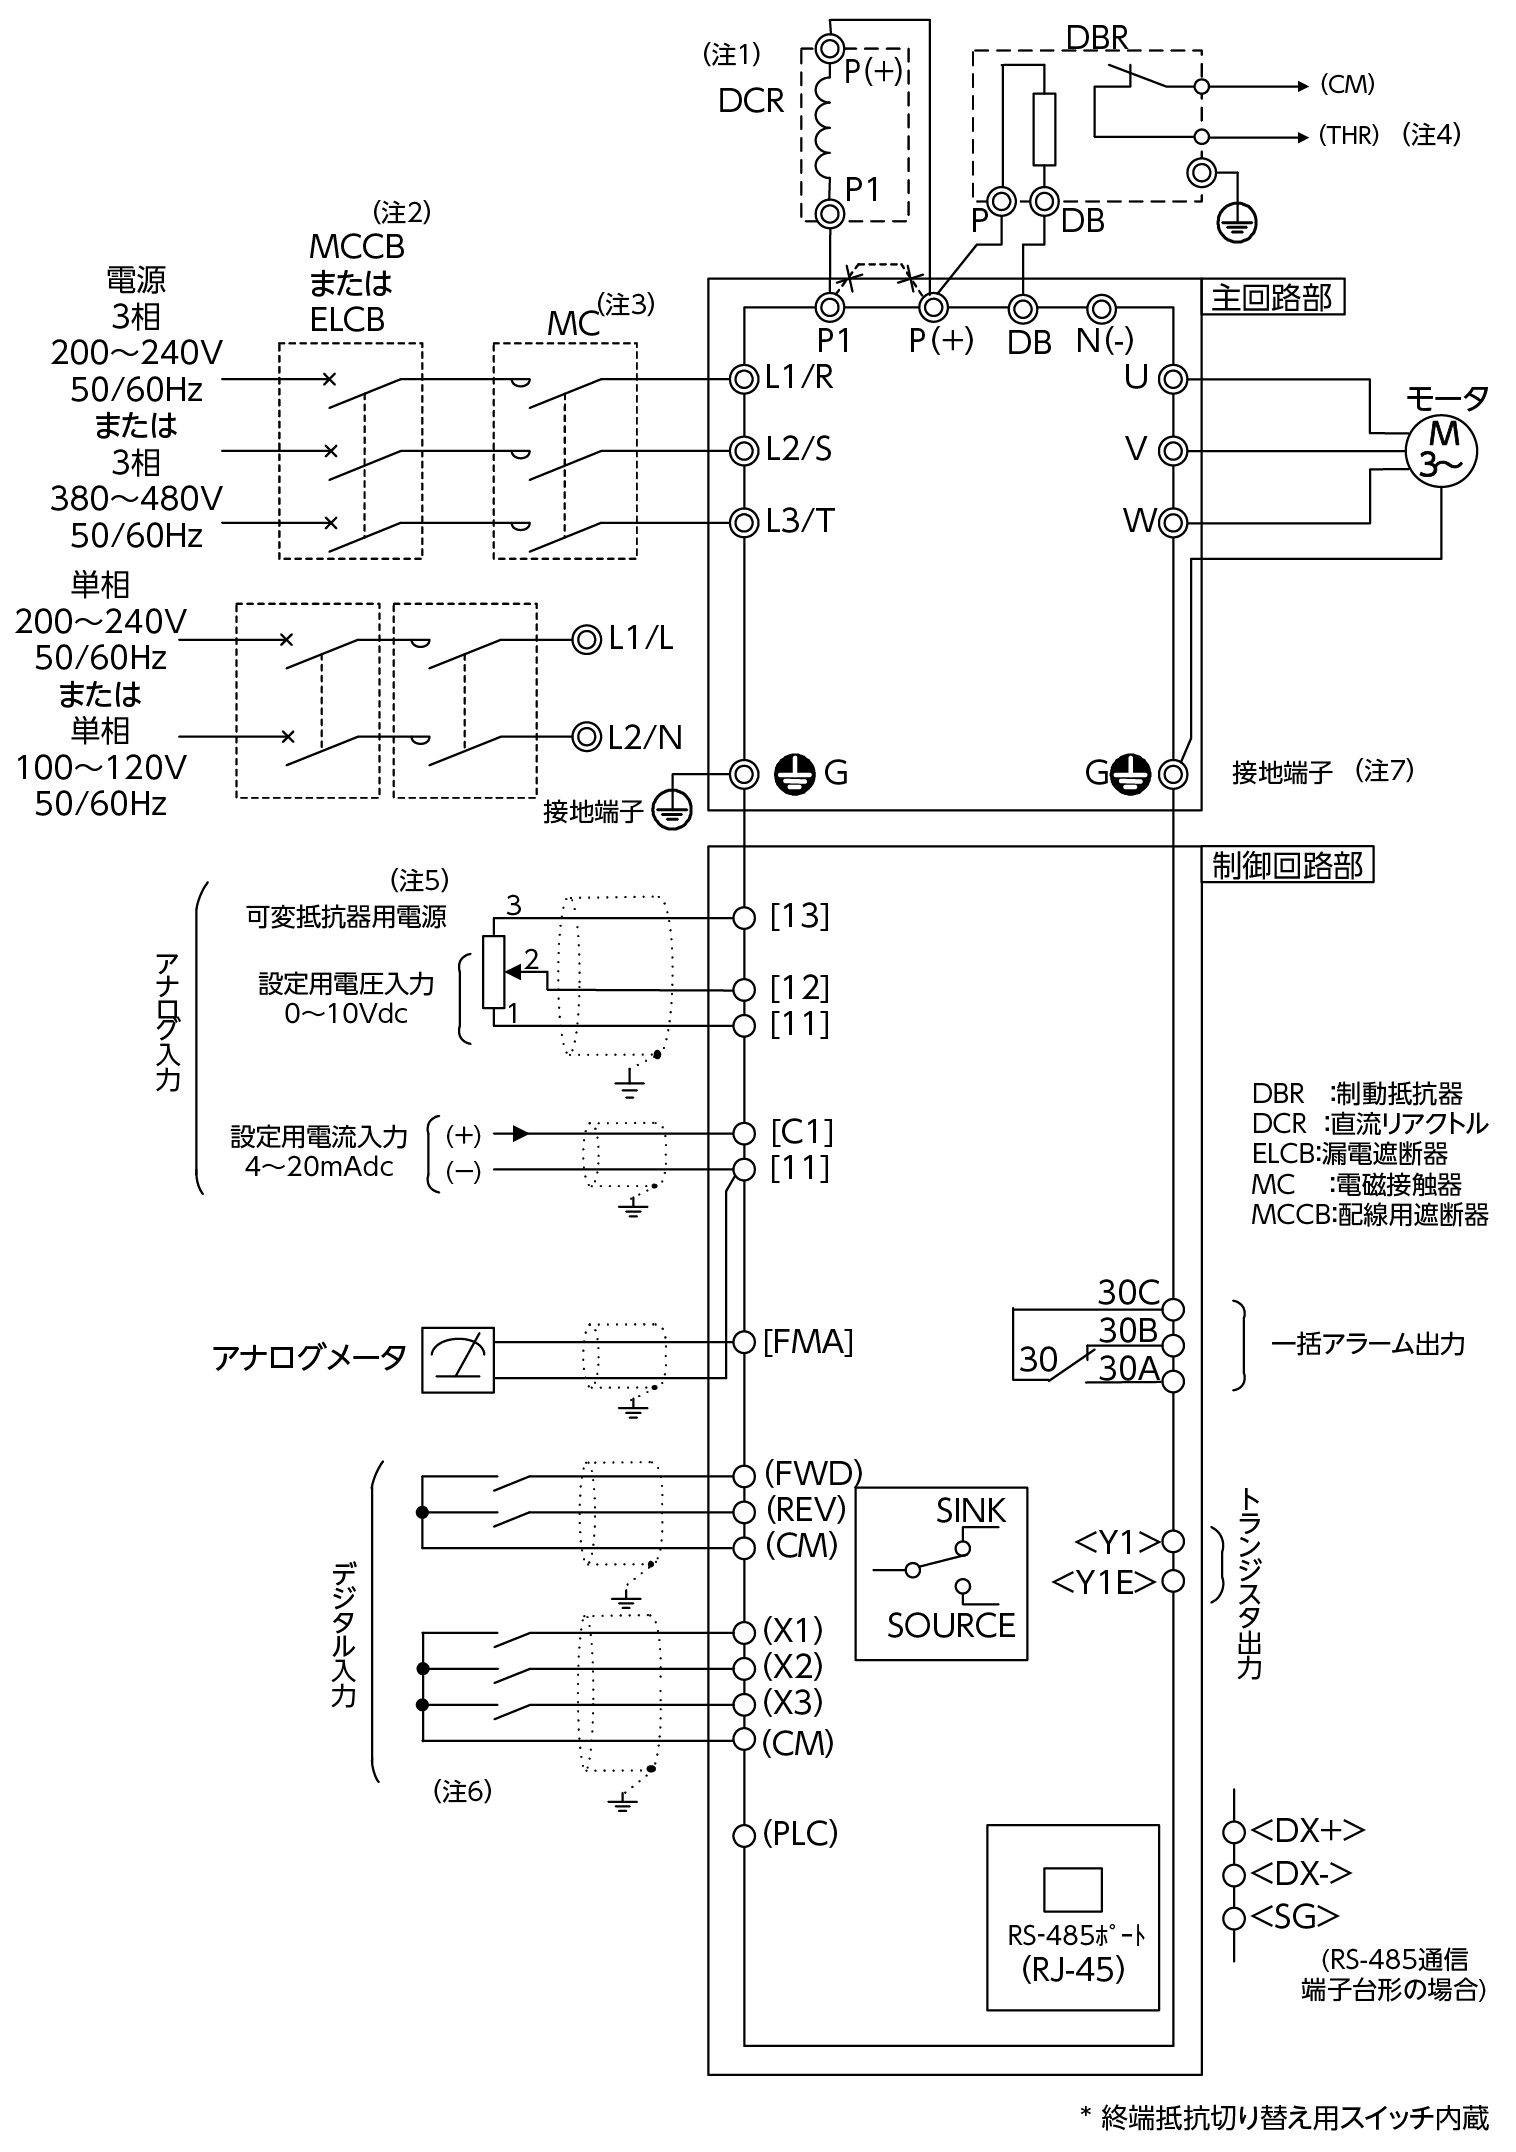 FRN0.4C2S-2Jの接続図